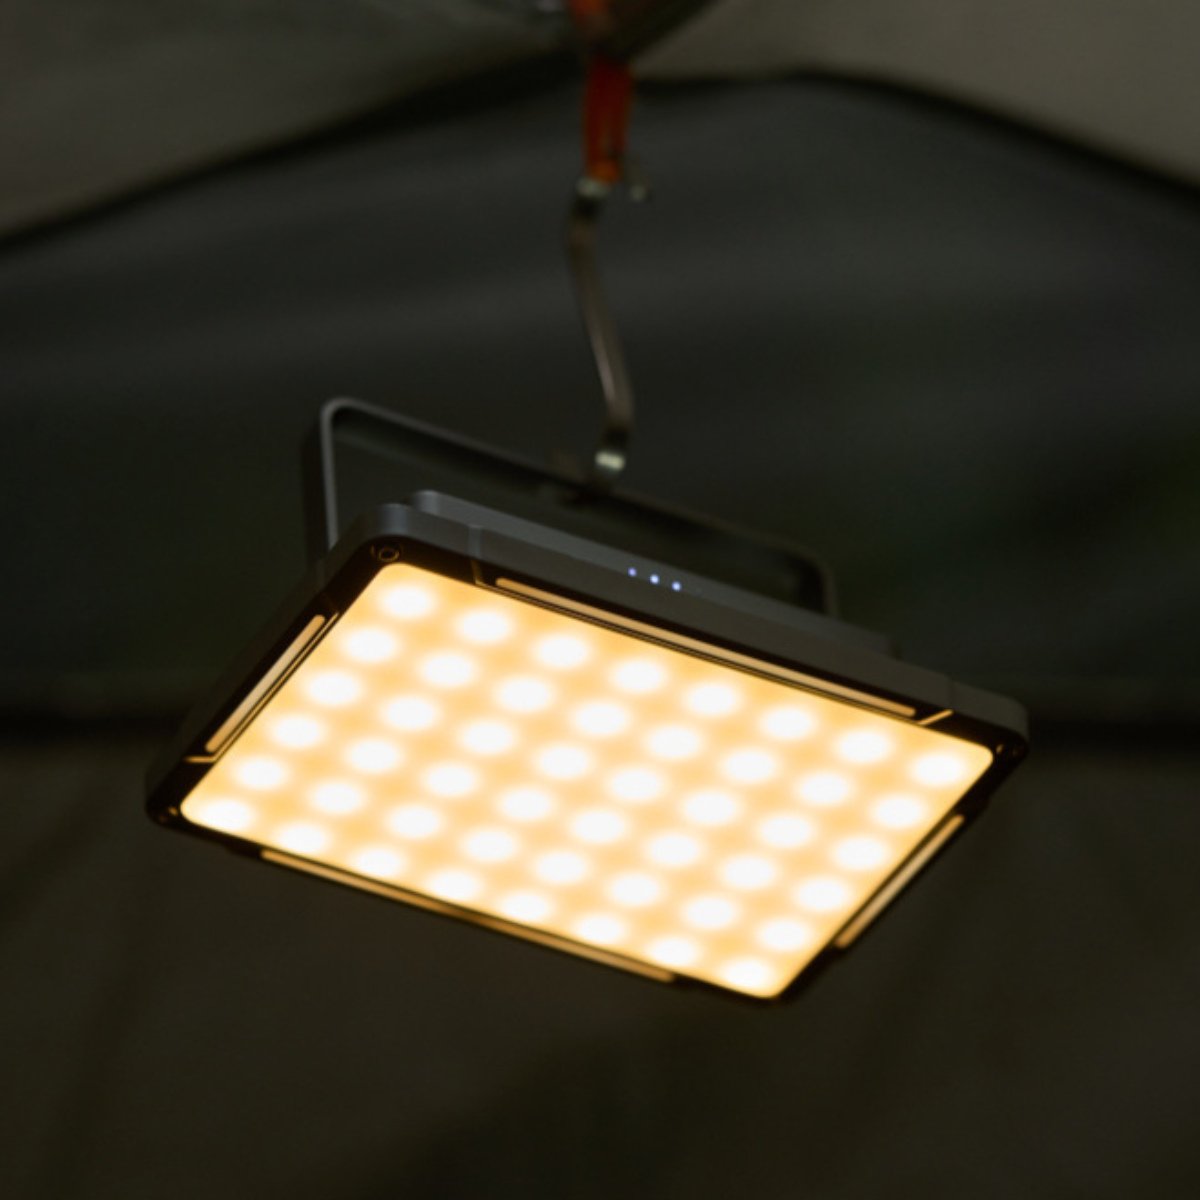 UWOT Metall-Campinglampe: tragbar&langlebig, zwei camping hohe Ausdauer Licht, Weiß,Gelb lampe Leuchtrichtungen, einstellbares